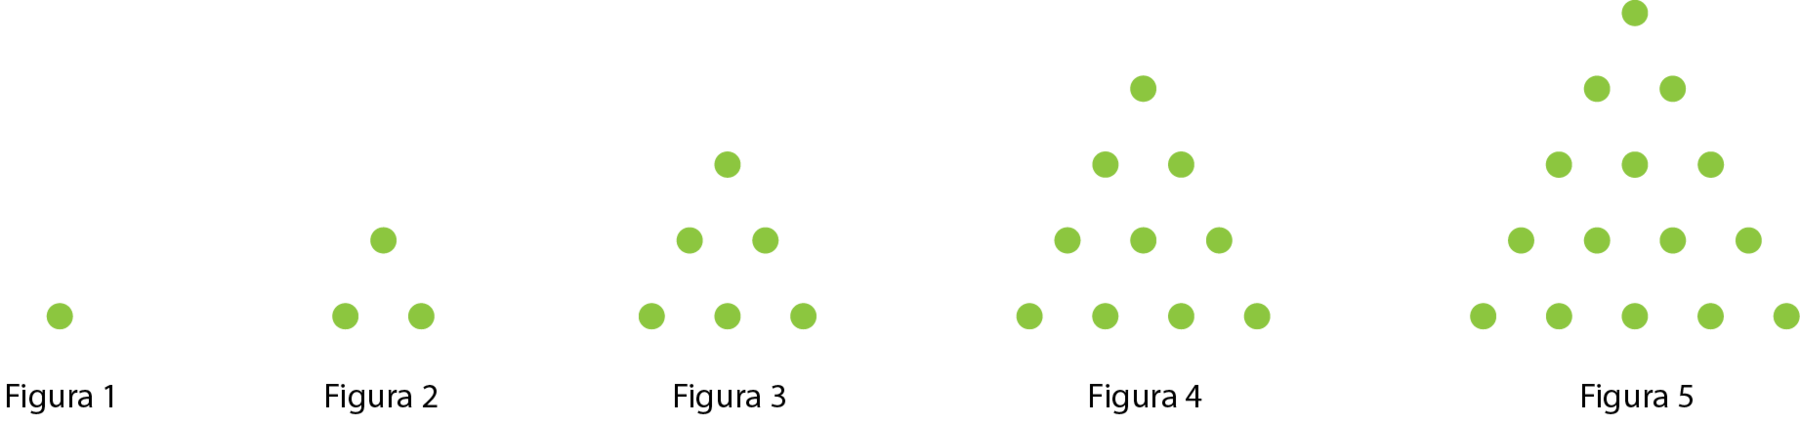 Ilustração. 5 figuras em sequência, todas compostas por bolinhas idênticas.

A figura 1 é composta de 1 bolinha.

A figura 2 é composta de 3 bolinhas em disposição triangular sendo 1 fileira  com 2 bolinhas e 1 fileira com 1 bolinha.

A figura 3 é composta de 9 bolinhas em disposição triangular sendo 1 fileira com 3 bolinhas, 1 fileira  com 2 bolinhas e 1 fileira com 1 bolinha.

A figura 4 é composta de 16 bolinhas em disposição triangular sendo 1 fileira com 4 bolinhas, 1 fileira com 3 bolinhas, 1 fileira  com 2 bolinhas e 1 fileira com 1 bolinha.

A figura 5 é composta de 25 bolinhas em disposição triangular sendo 1 fileira com 5 bolinhas, 1 fileira com 4 bolinhas, 1 fileira com 3 bolinhas, 1 fileira  com 2 bolinhas e 1 fileira com 1 bolinha.